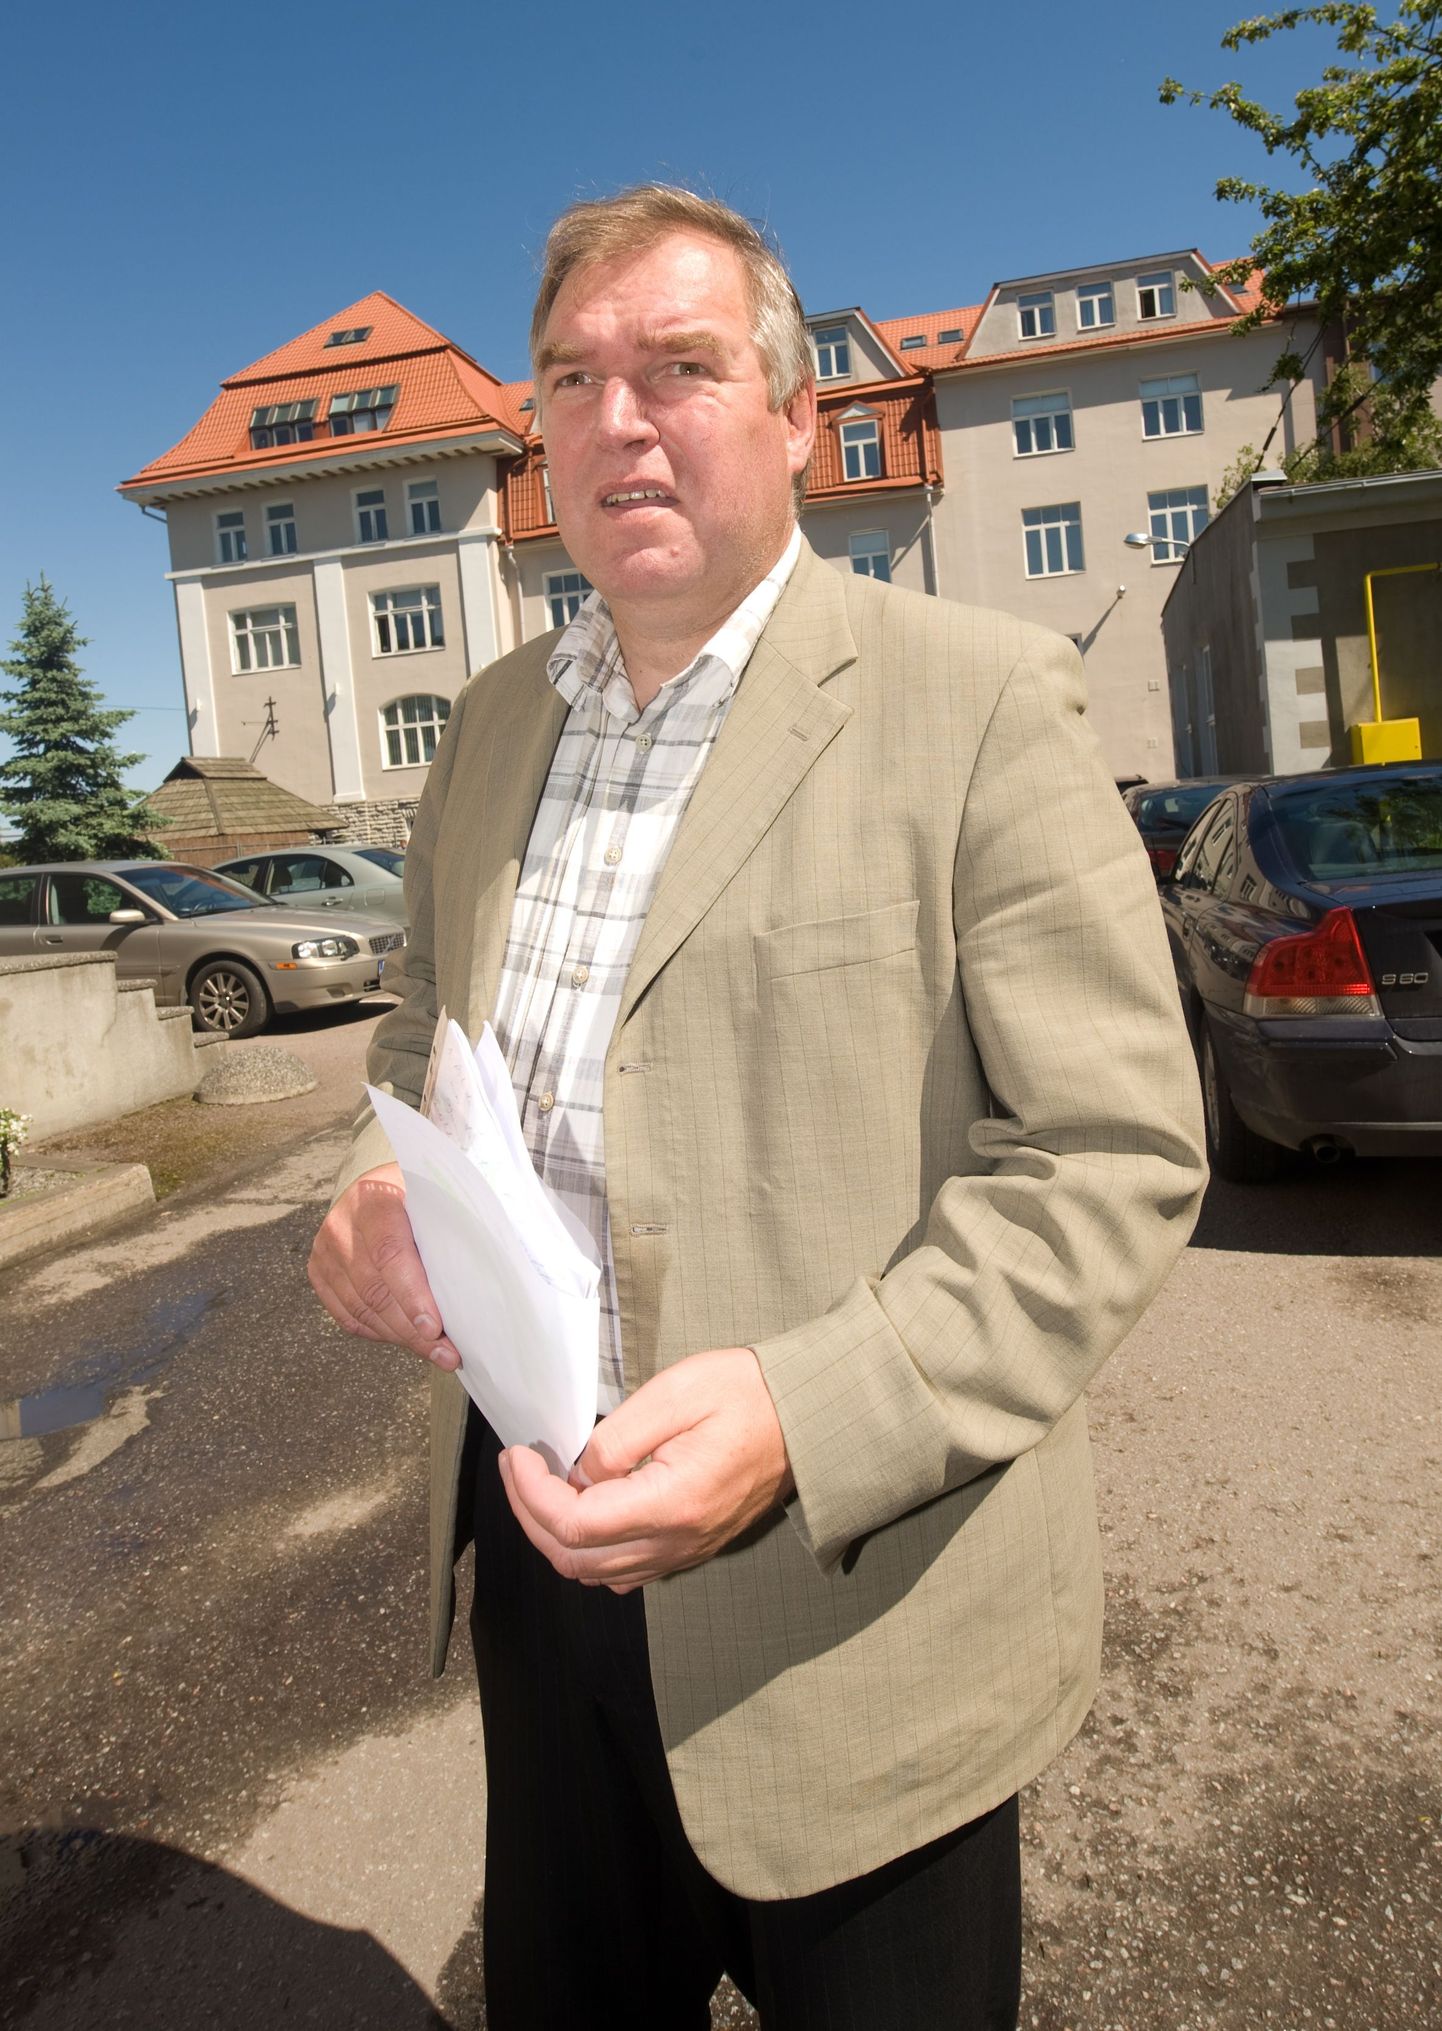 Tallinna ehitusjärelevalve teenistuse direktori kohast ilma jäänud Rain Seier rääkis möödunud nädalal meediale, kuidas «sobimatutele» isikutele ehituslubade andmist takistatakse.